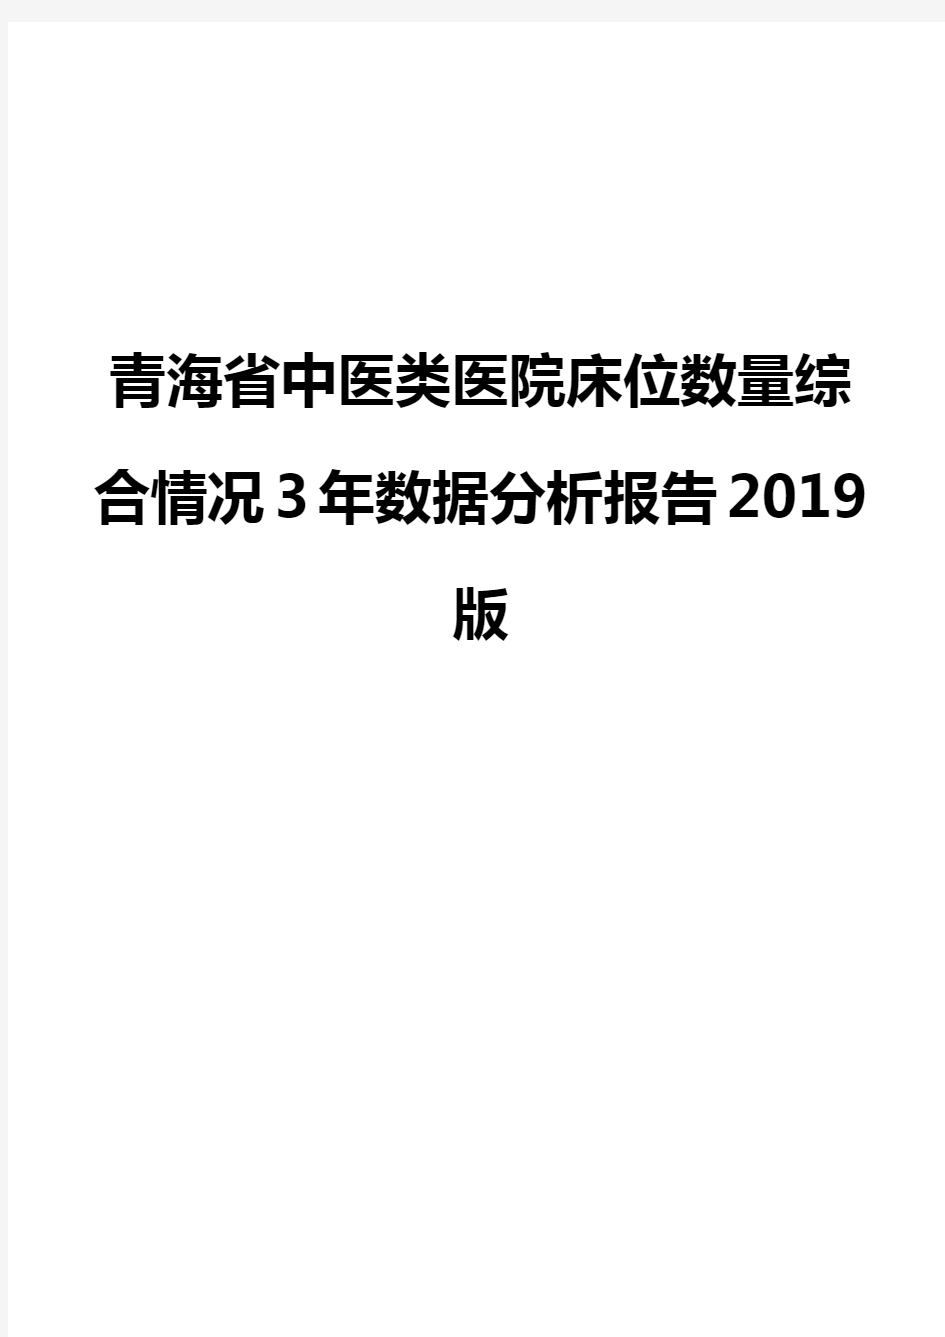 青海省中医类医院床位数量综合情况3年数据分析报告2019版